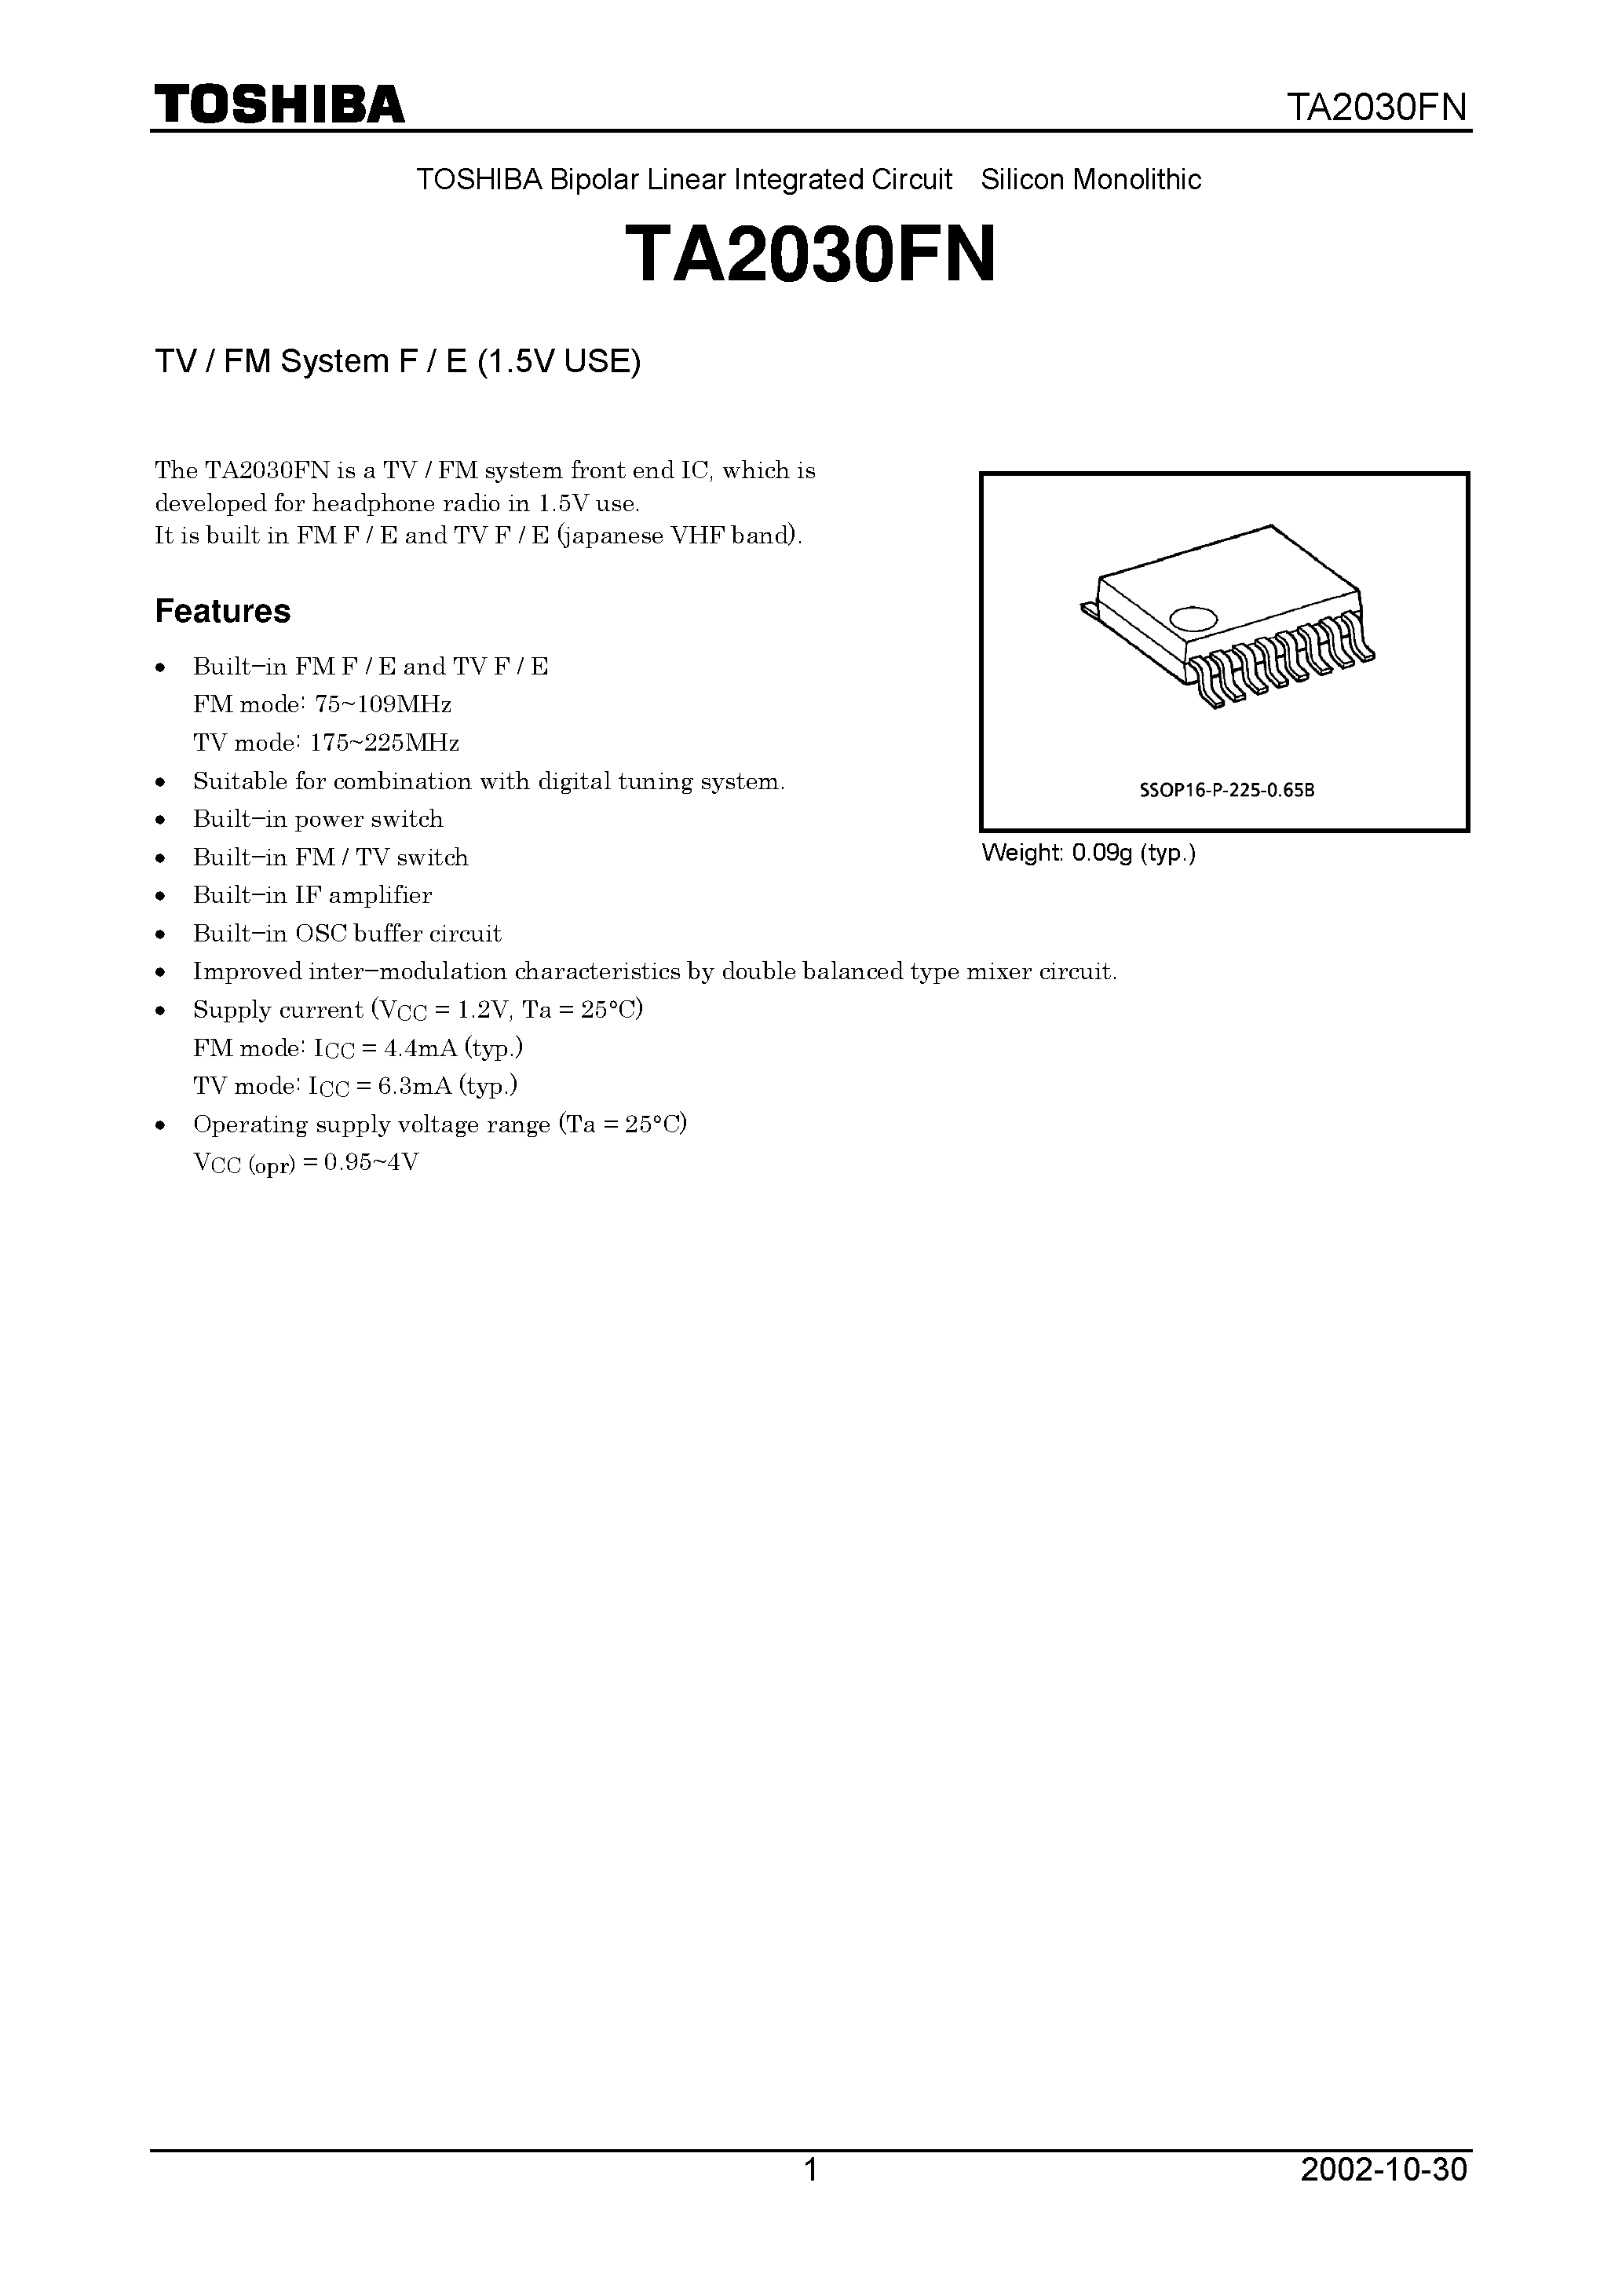 Даташит TA2030FN - TV/FM SYSTEM F/E (1.5V USE) страница 1